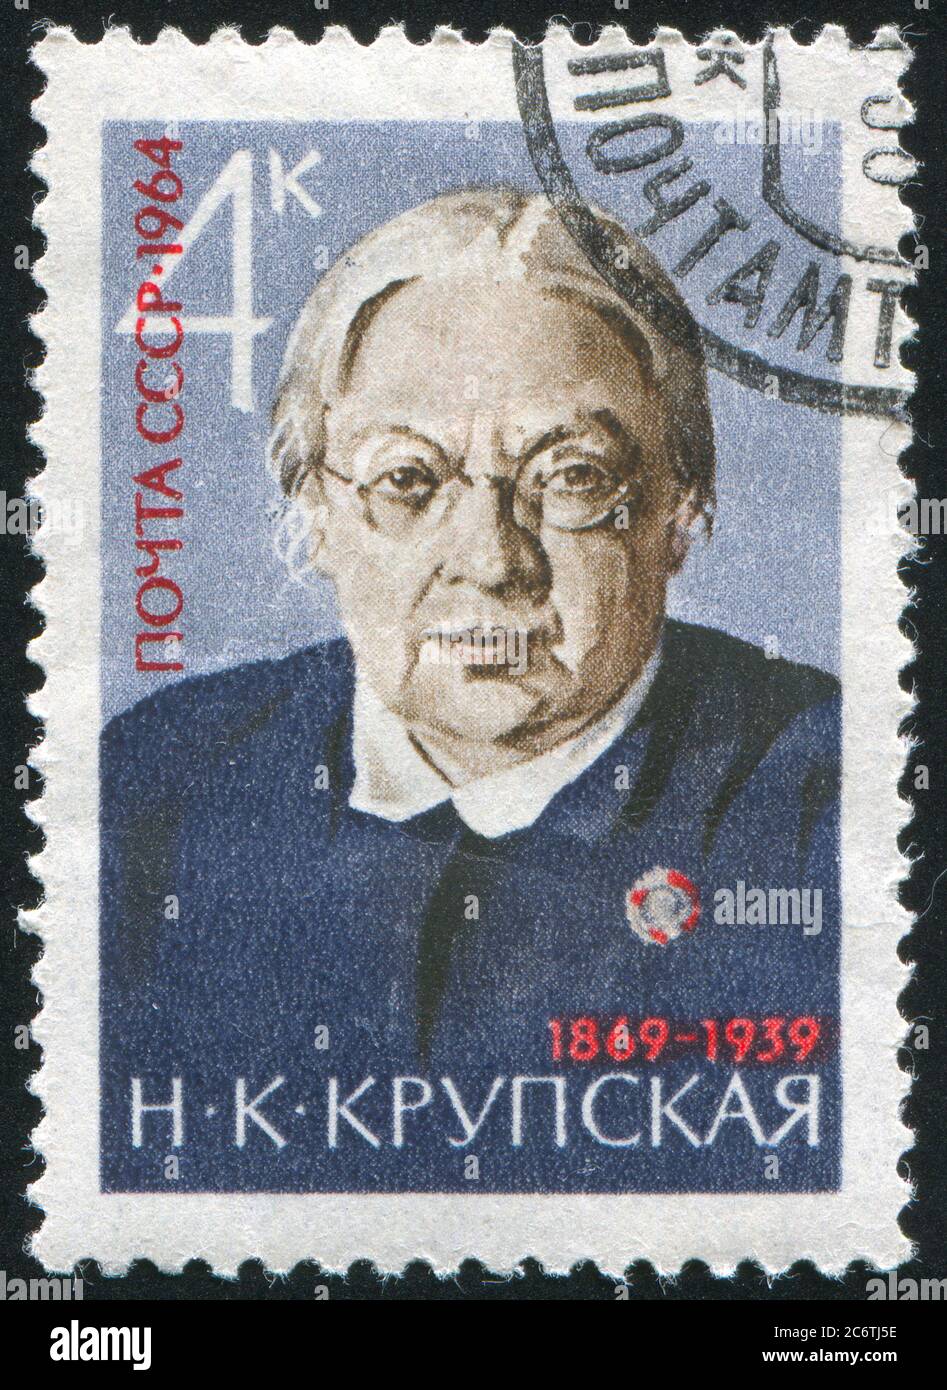 RUSSLAND - UM 1964: Briefmarke gedruckt von Russland, zeigt Nadezhda K. Krupskaya, um 1964 Stockfoto